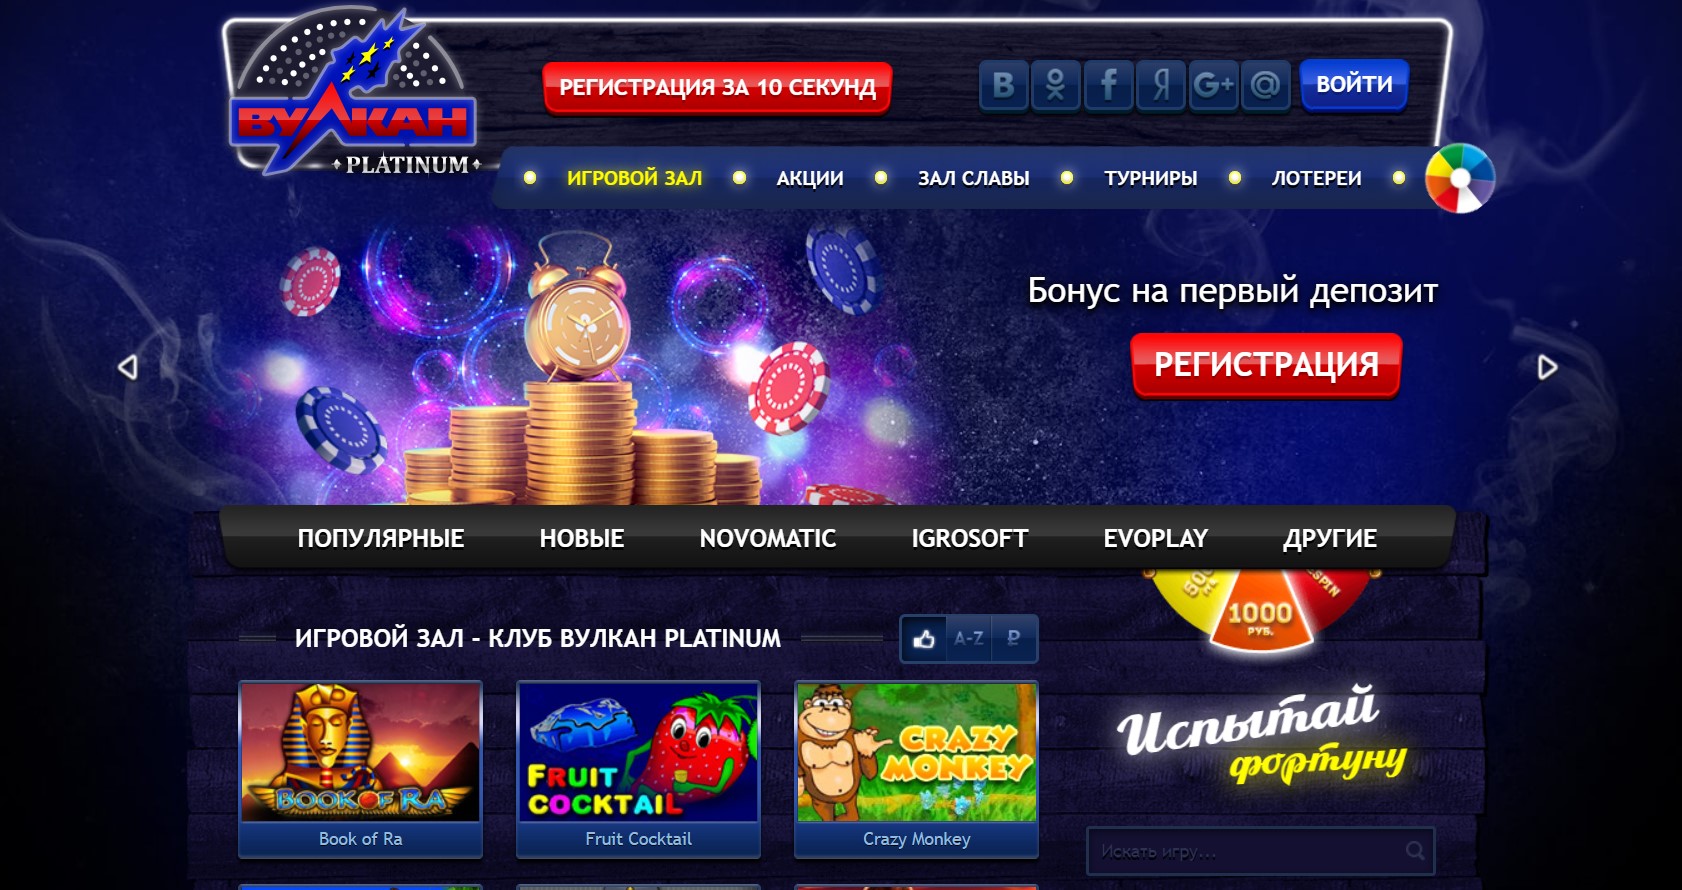 Онлайн казино вулкан платинум бонус при регистрации фараон casino